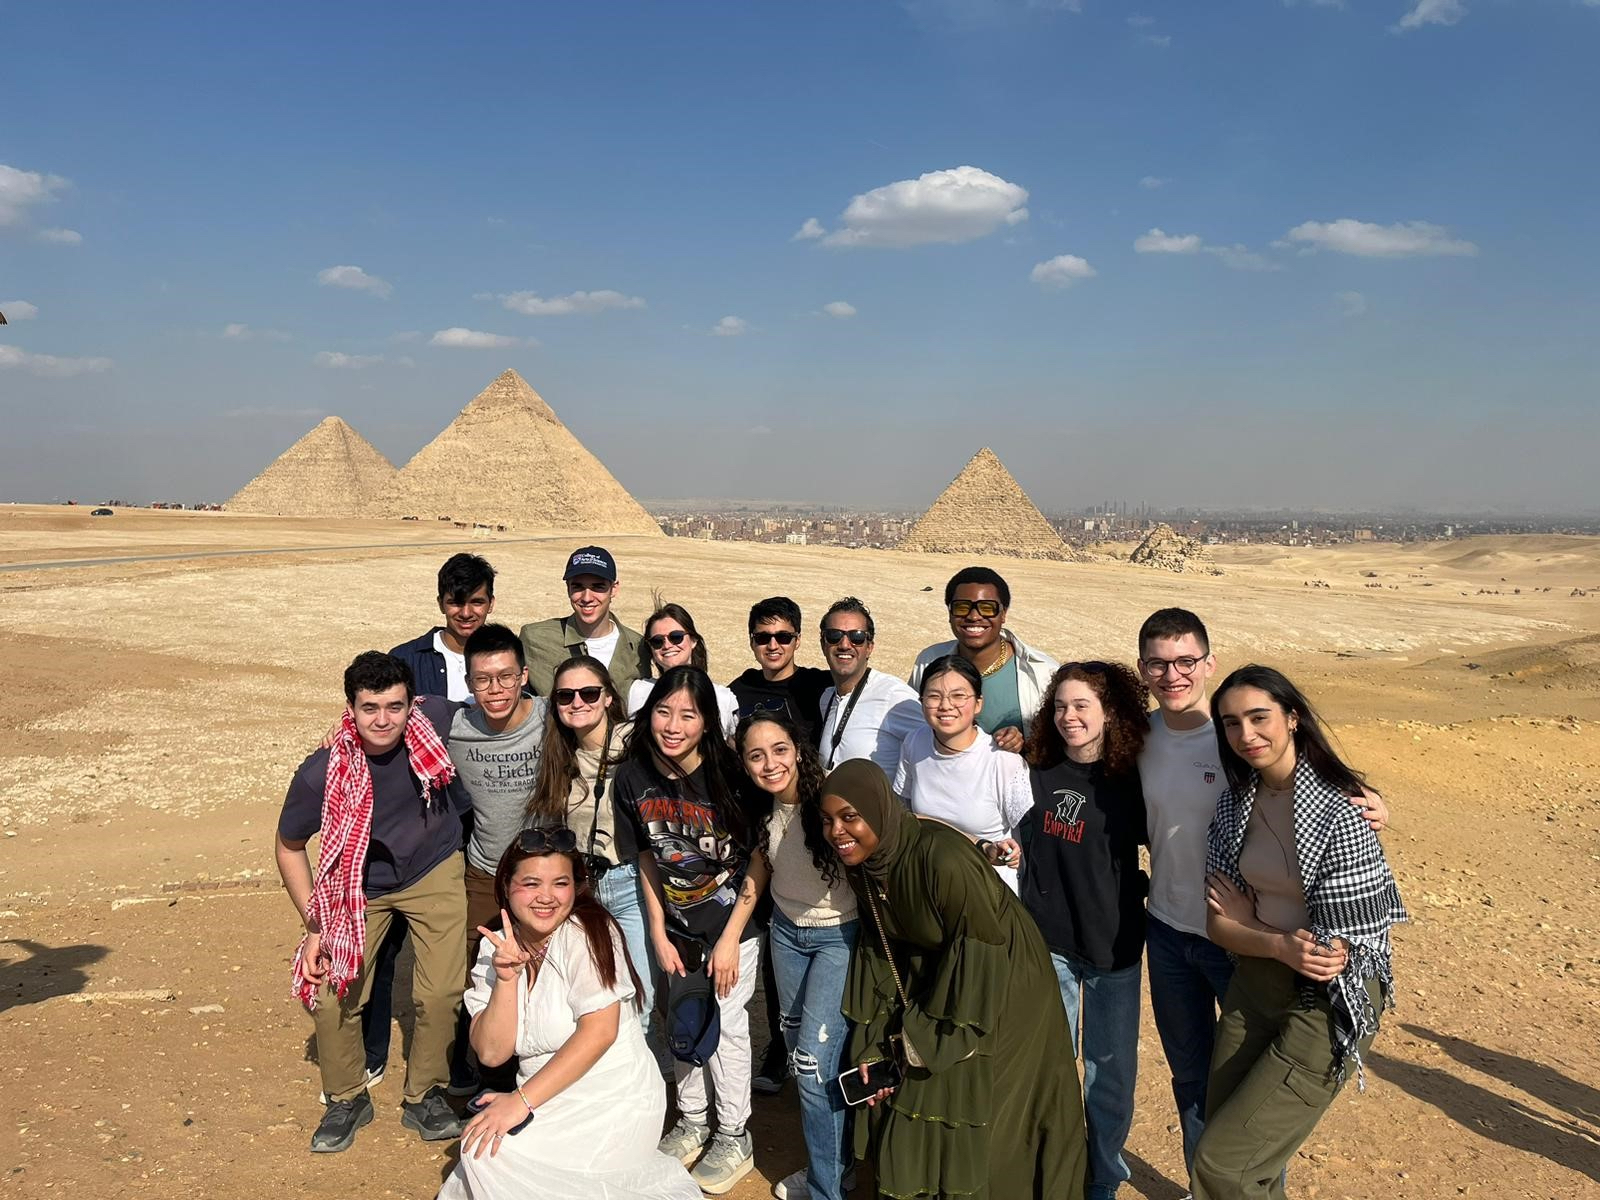 A group of Penn students visit the pyramids at Giza